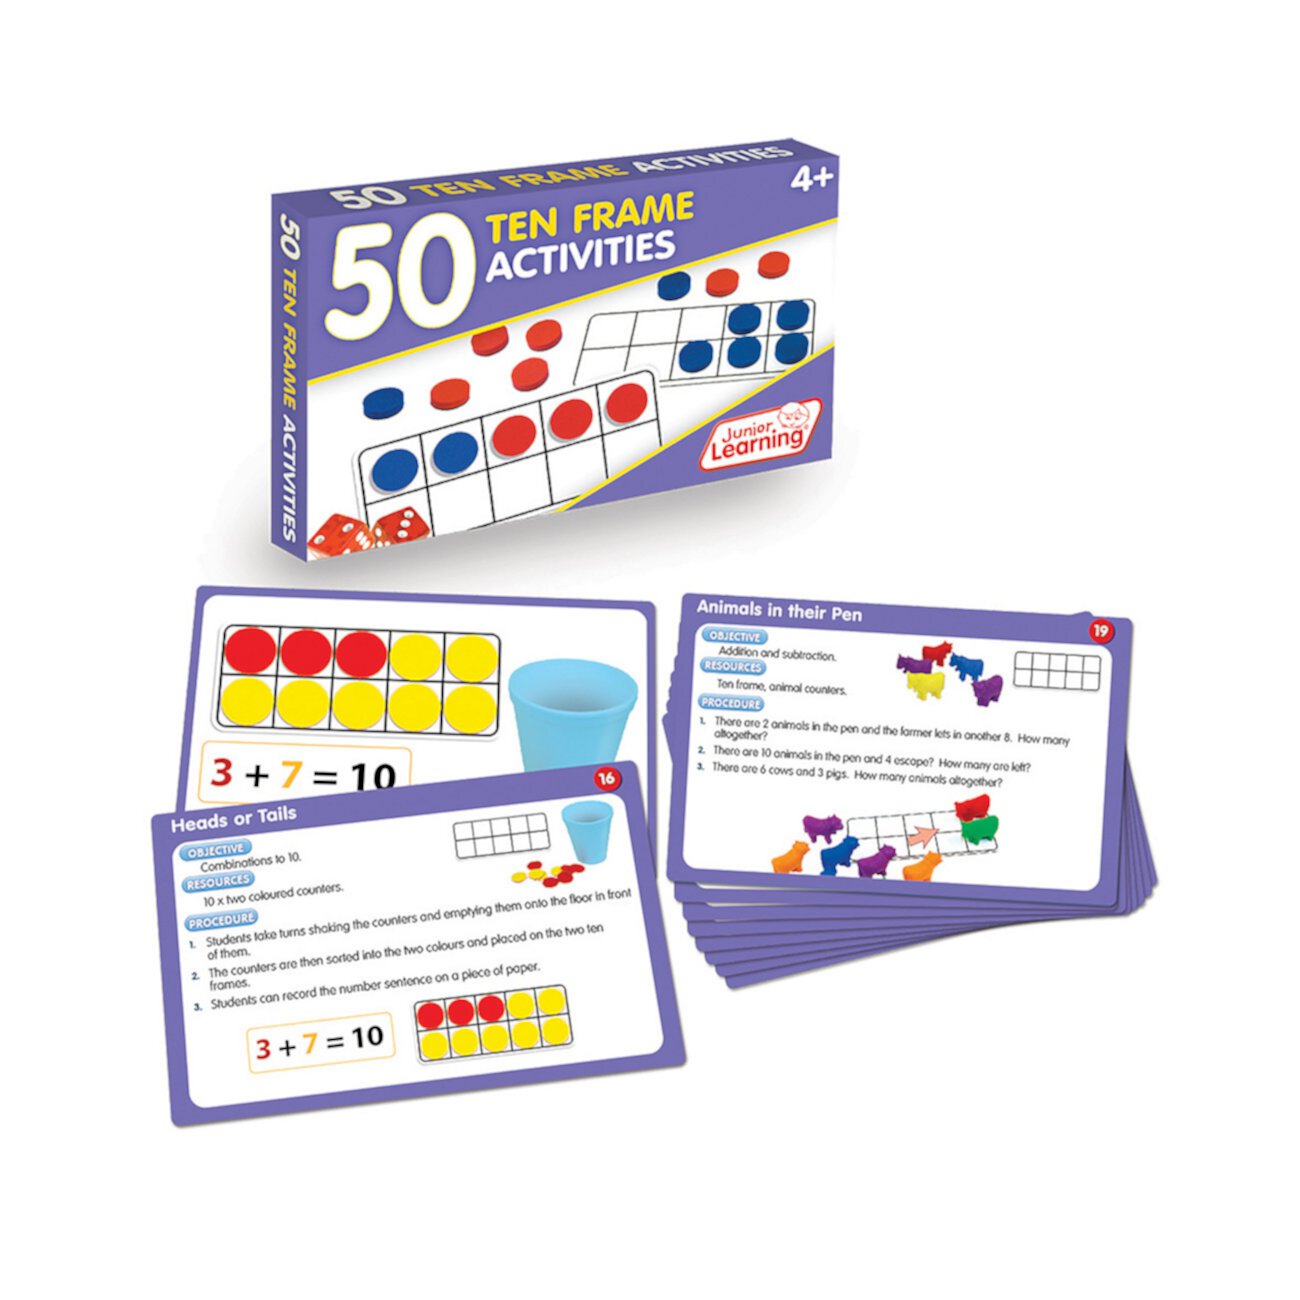 Учебный набор «50 Ten Frame» Junior Learning